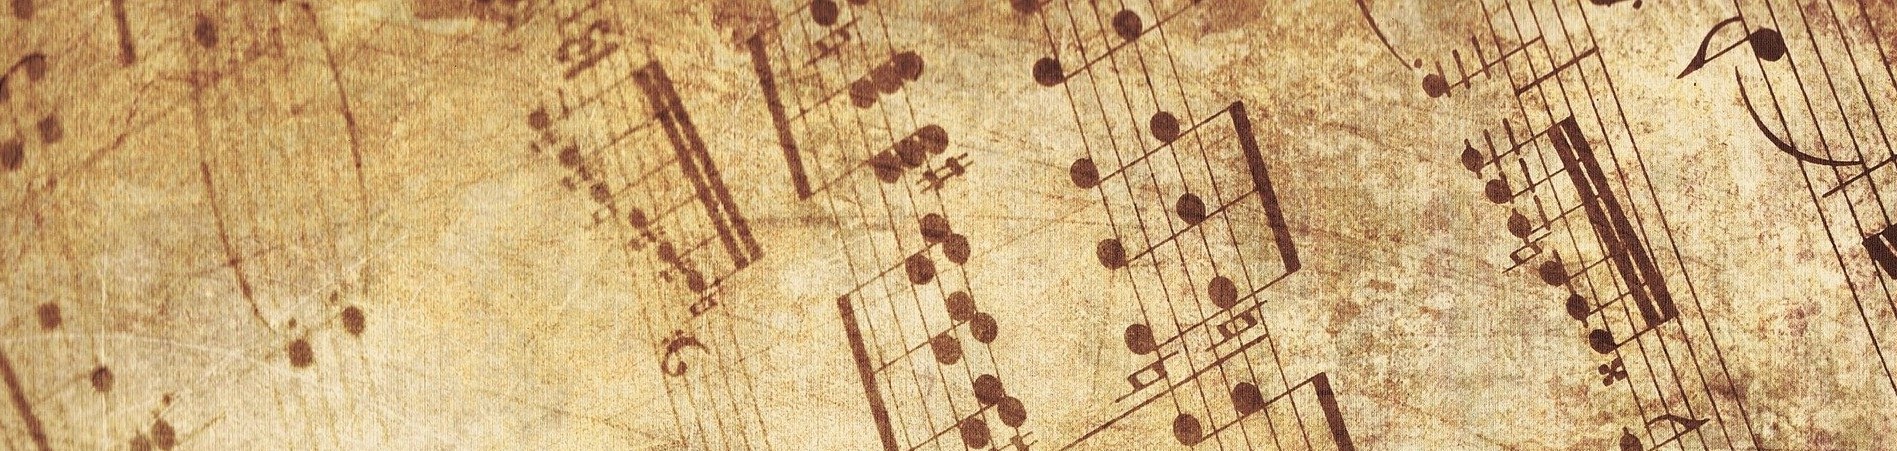 Blasorchesternoten Rauschende Birken - Titelbild